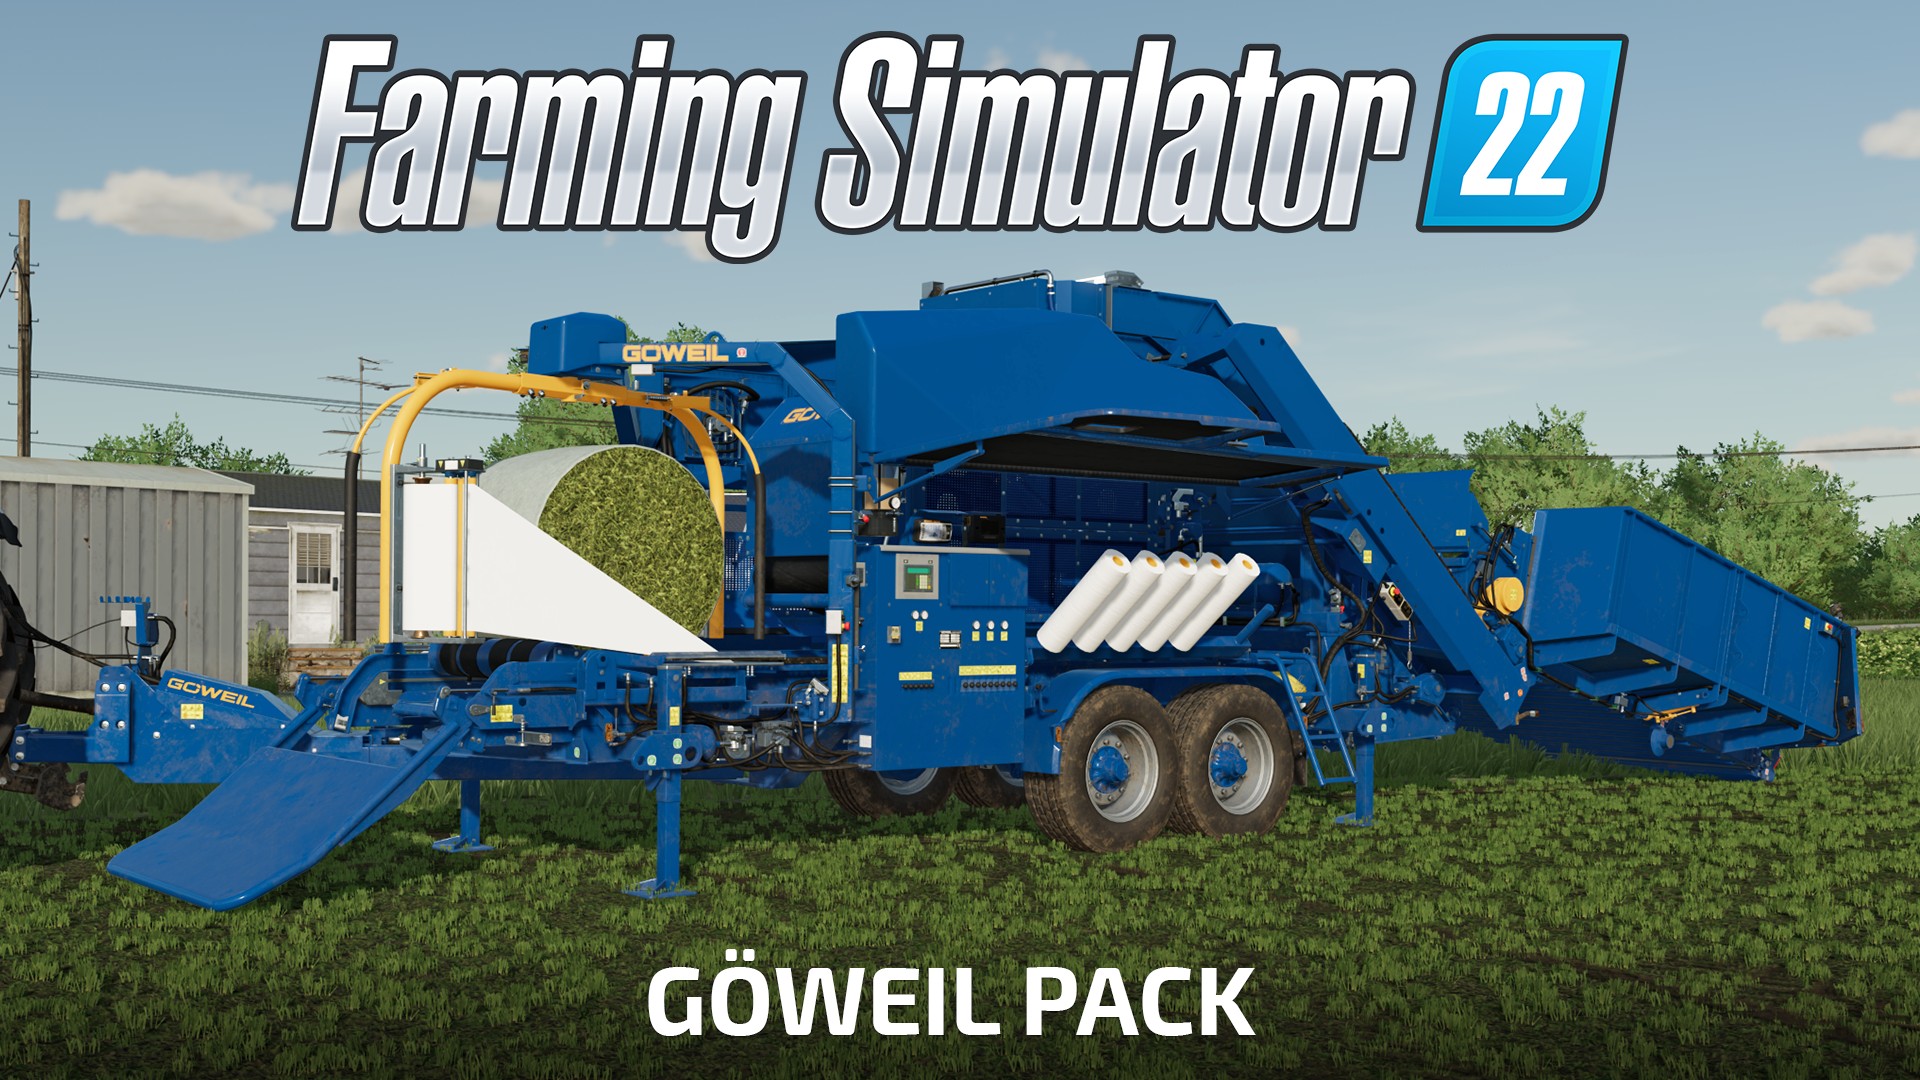 Landwirtschafts-Simulator 22: Göweil Pack für noch mehr Spaß beim